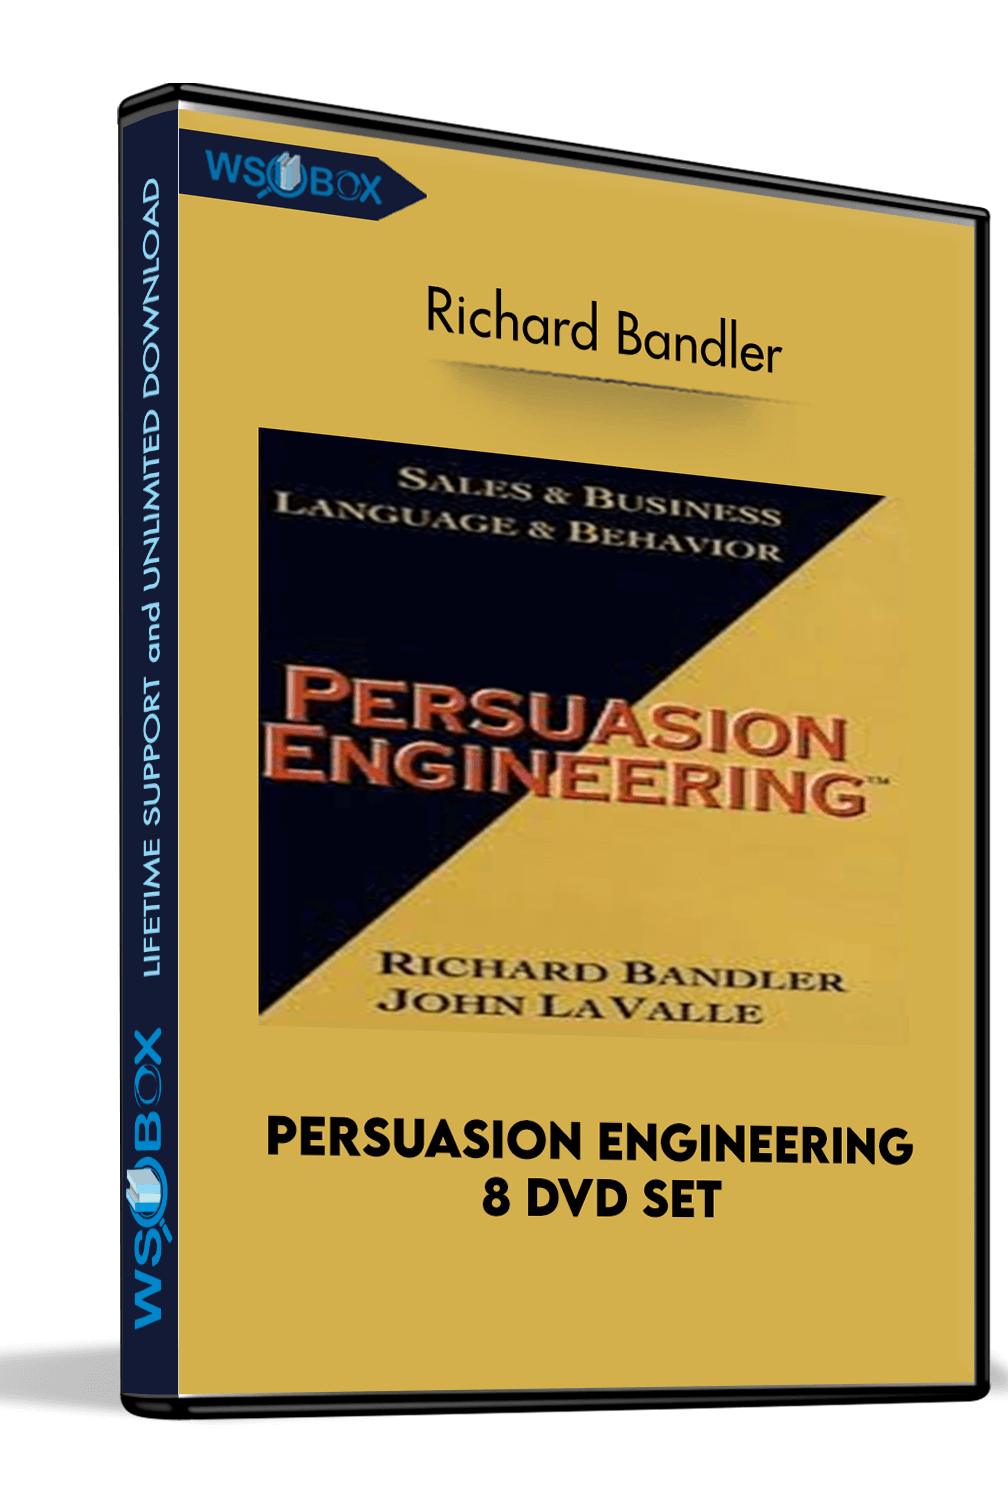 Persuasion Engineering 8 DVD Set – Richard Bandler